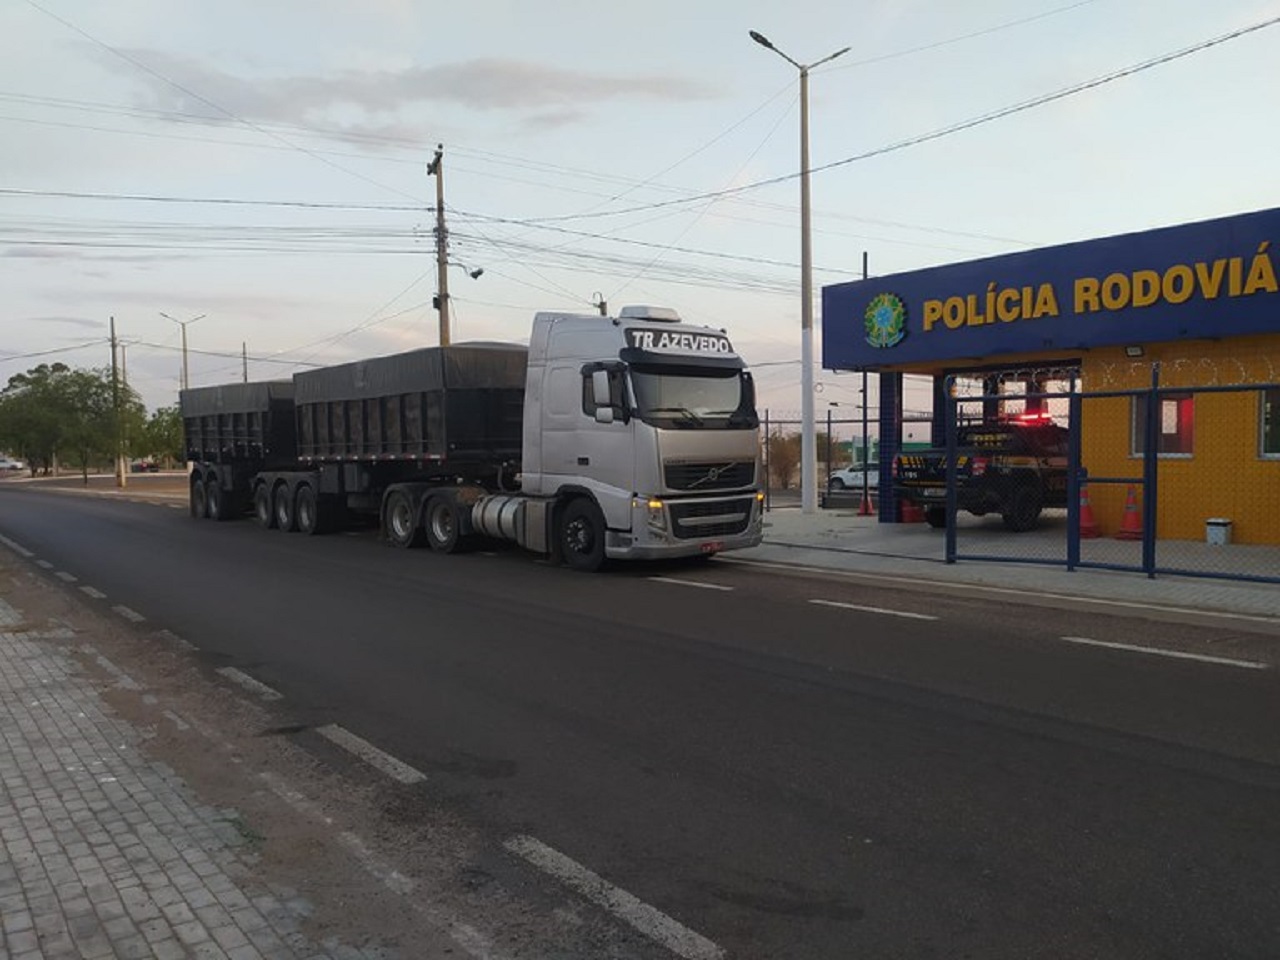 Em 48 Horas, PRF autua caminhões com mais de 200 toneladas de excesso de peso em Pernambuco